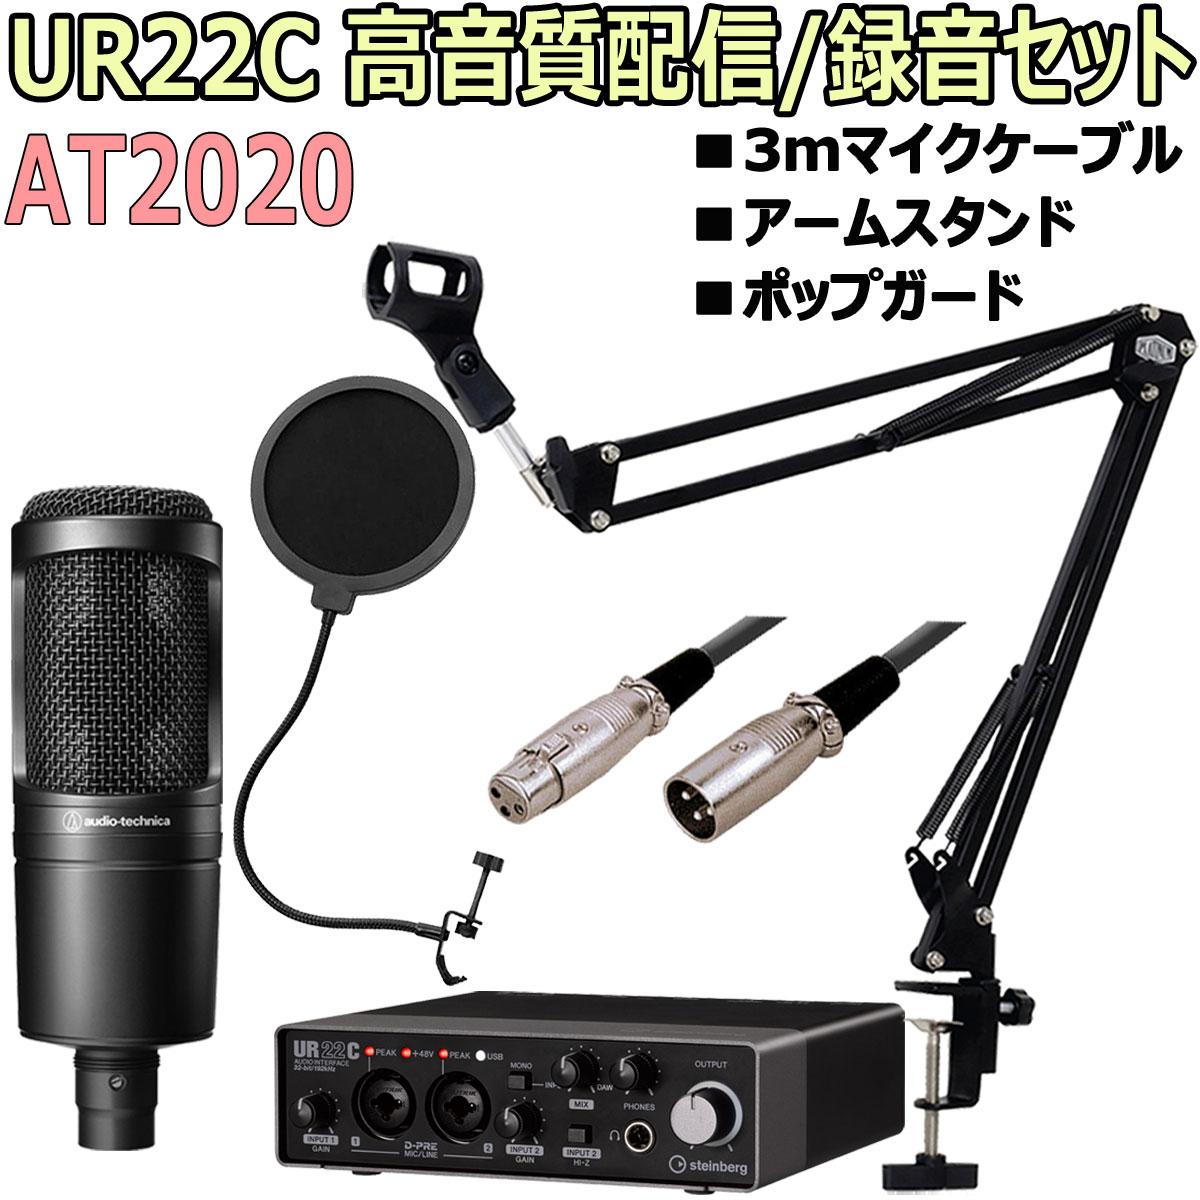 UR22C AT2020 XLRケーブル 即利用可能セット オーディオテクニカ